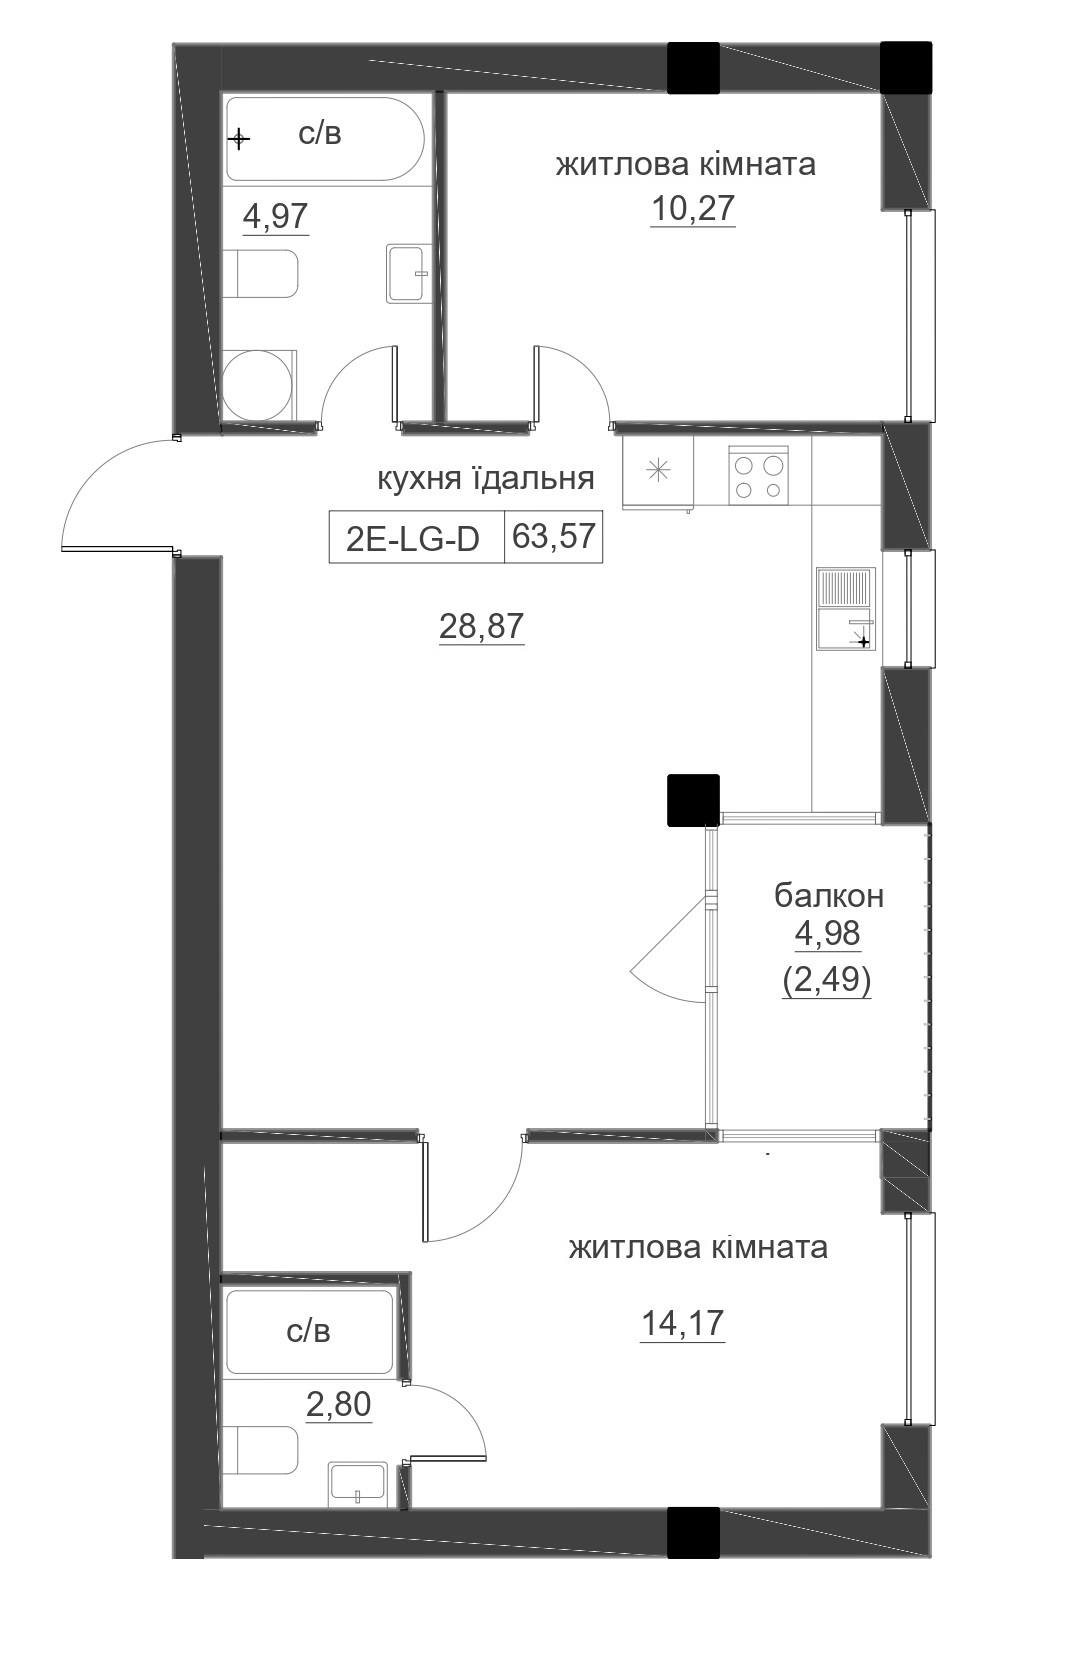 Планировка 2-к квартира площей 63.57м2, LR-005-06/0006.